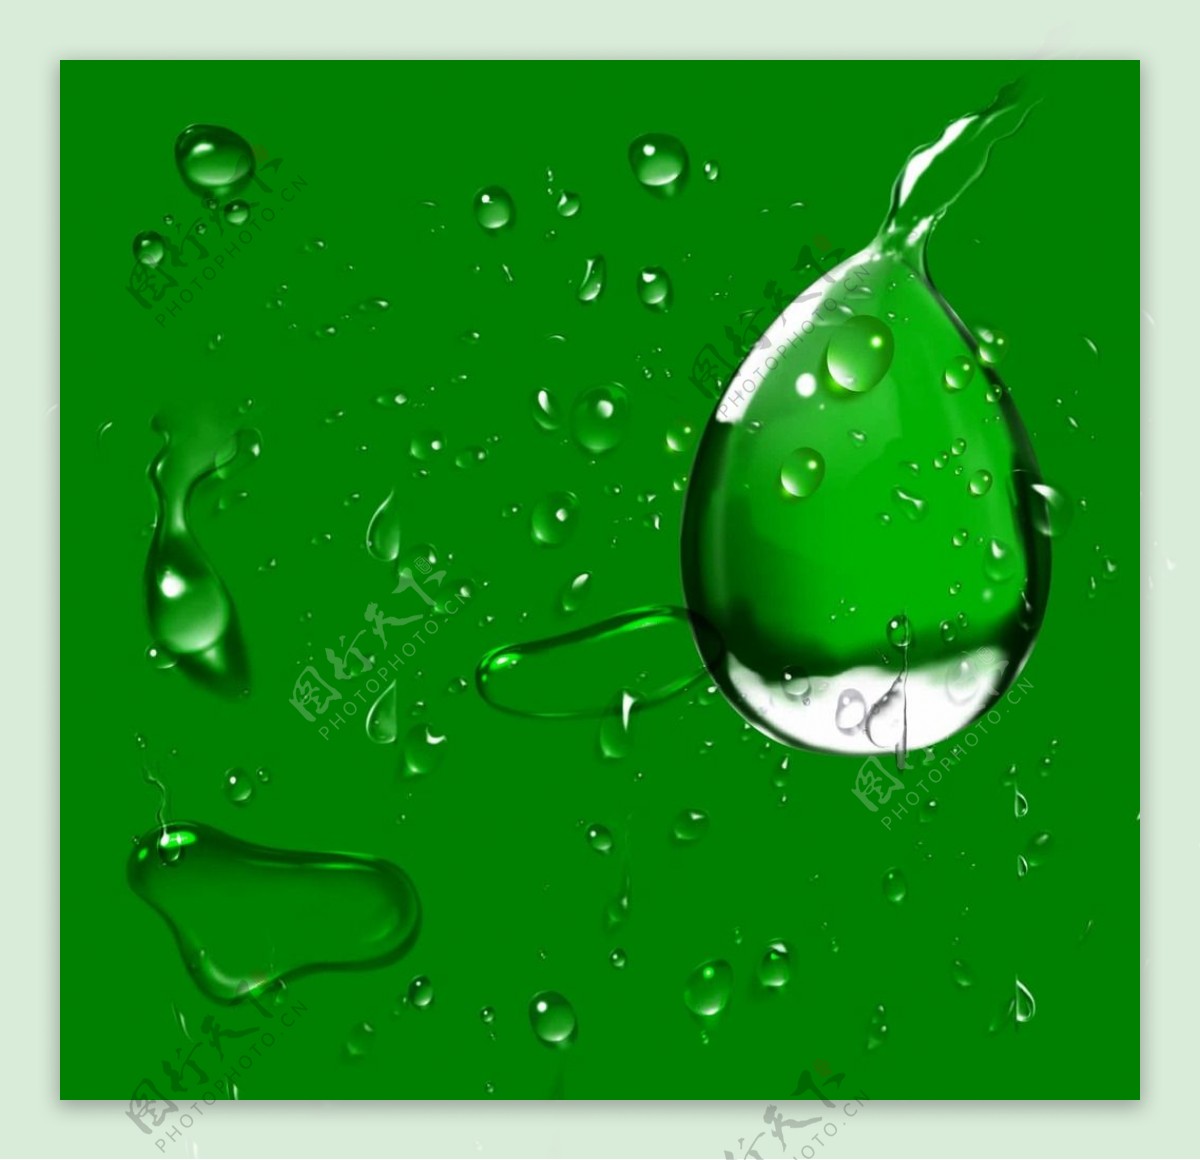 绿叶-水滴(小清新静态壁纸) - 静态壁纸下载 - 元气壁纸